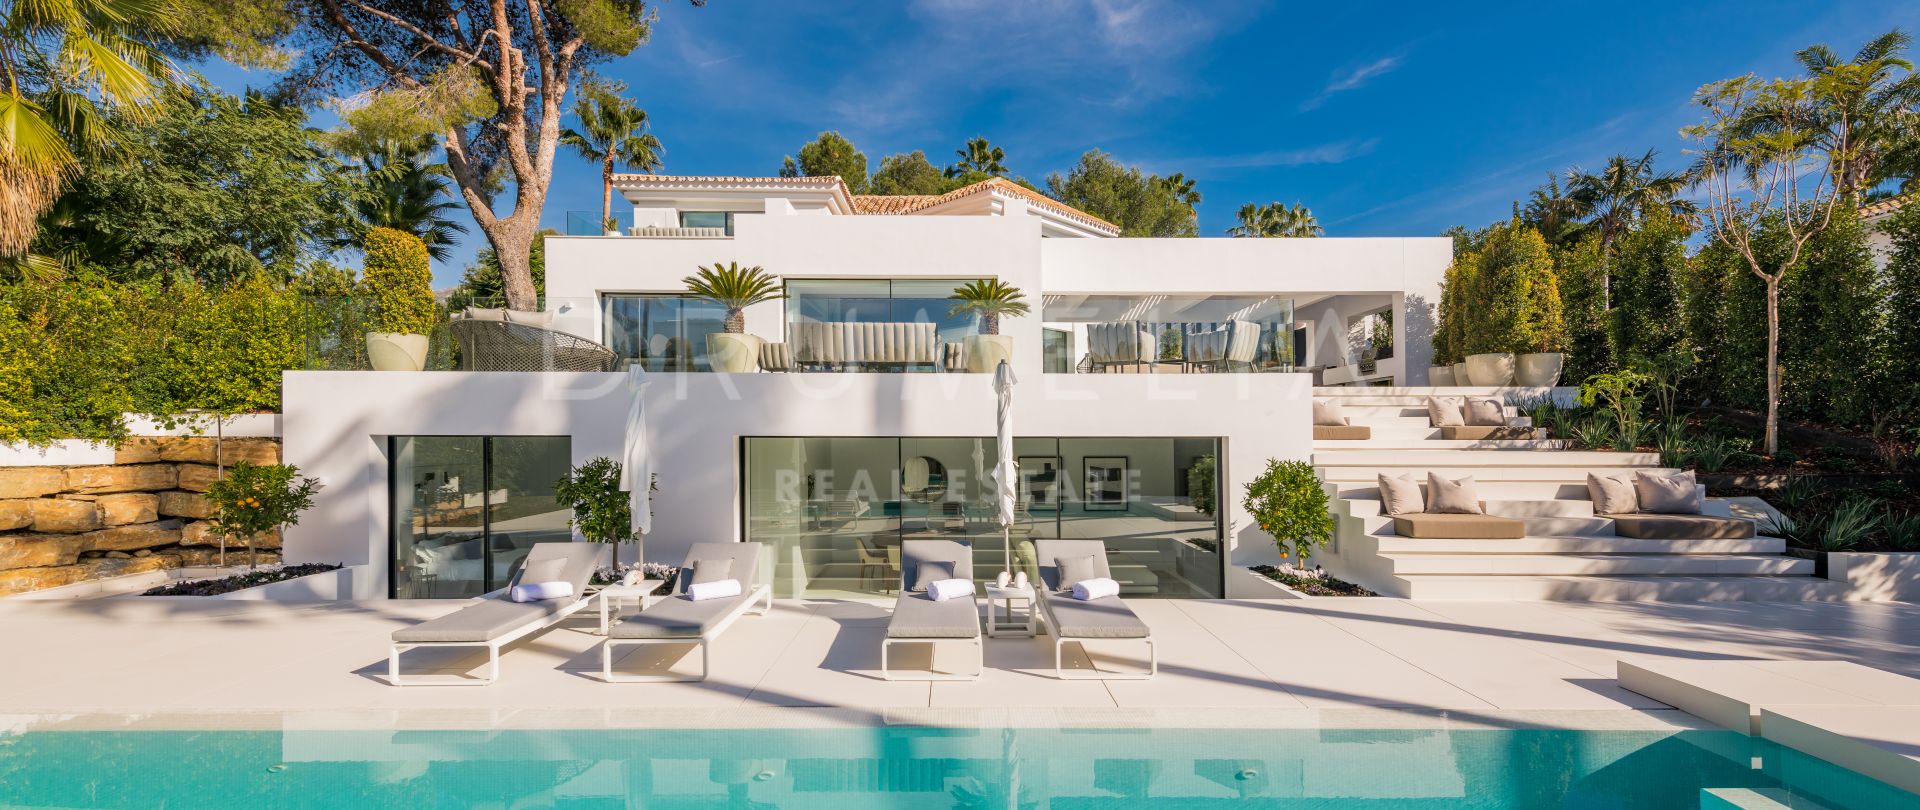 Casa Laranja - Stunning High-end Modern Design Luxury Villa in Nueva Andalucía, Marbella